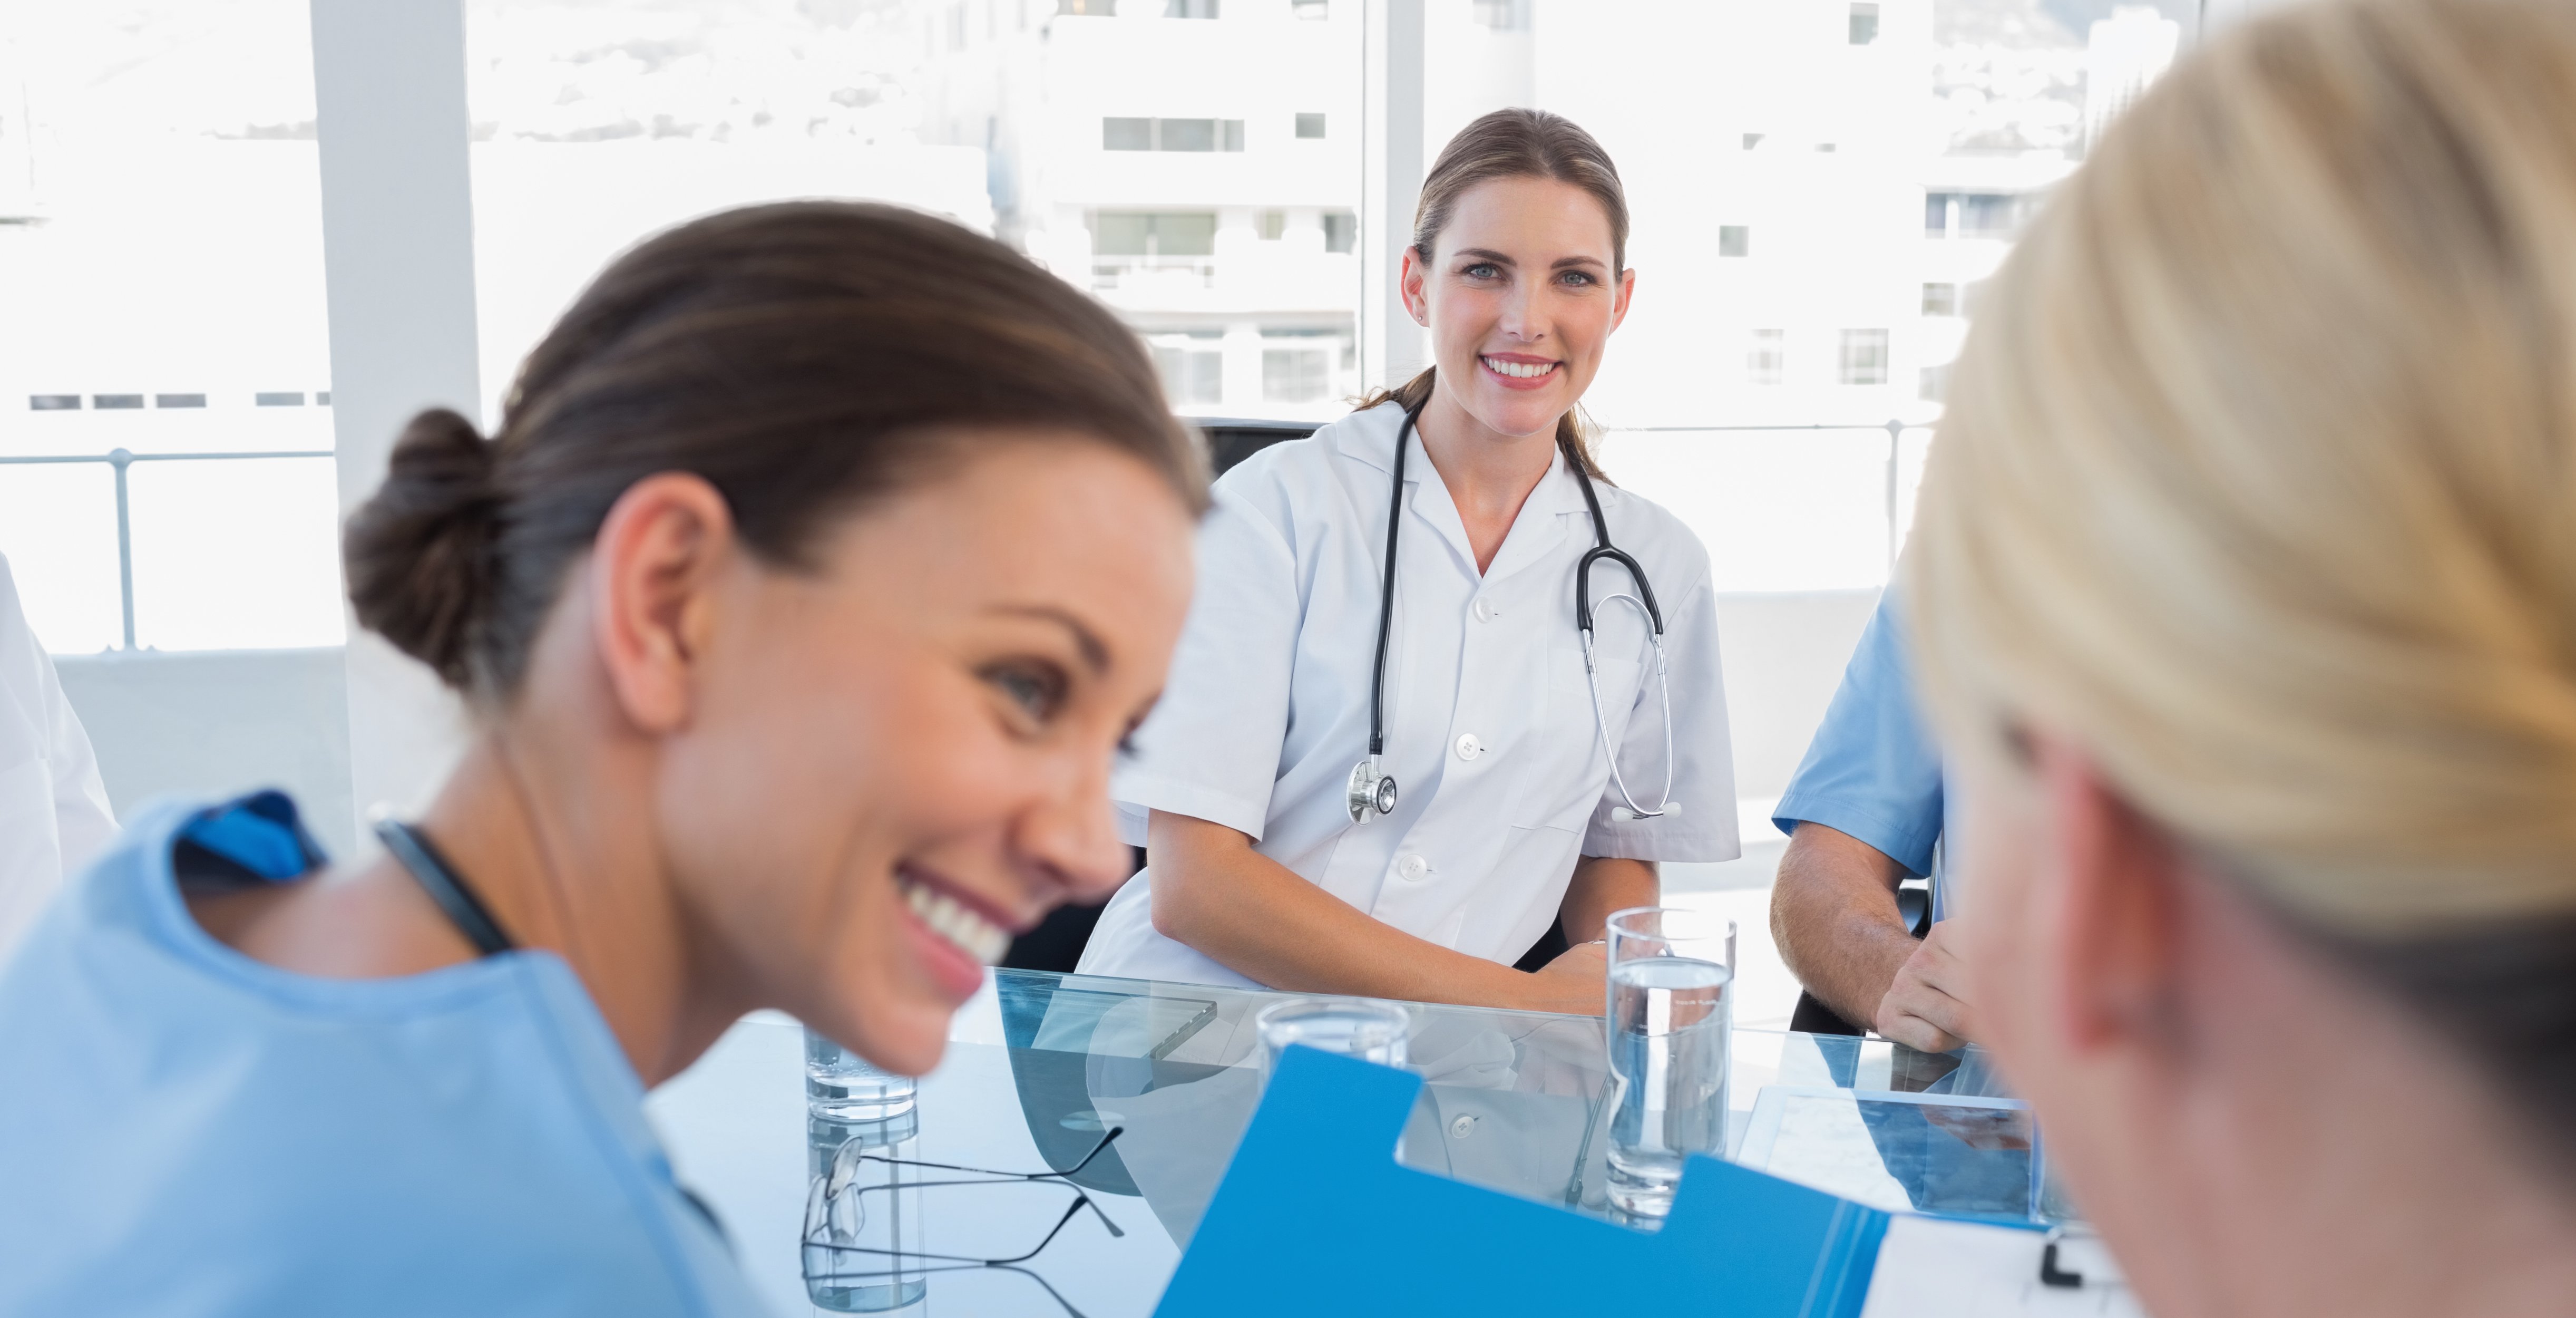 Das Bild zeigt drei Frauen an einem Besprechungstisch, sie tragen einen Kasak bzw. weißen Kittel jeweilsmit Stetoskop. Eine Frau ist von hinten zusehen, dien anderen beiden lächeln.